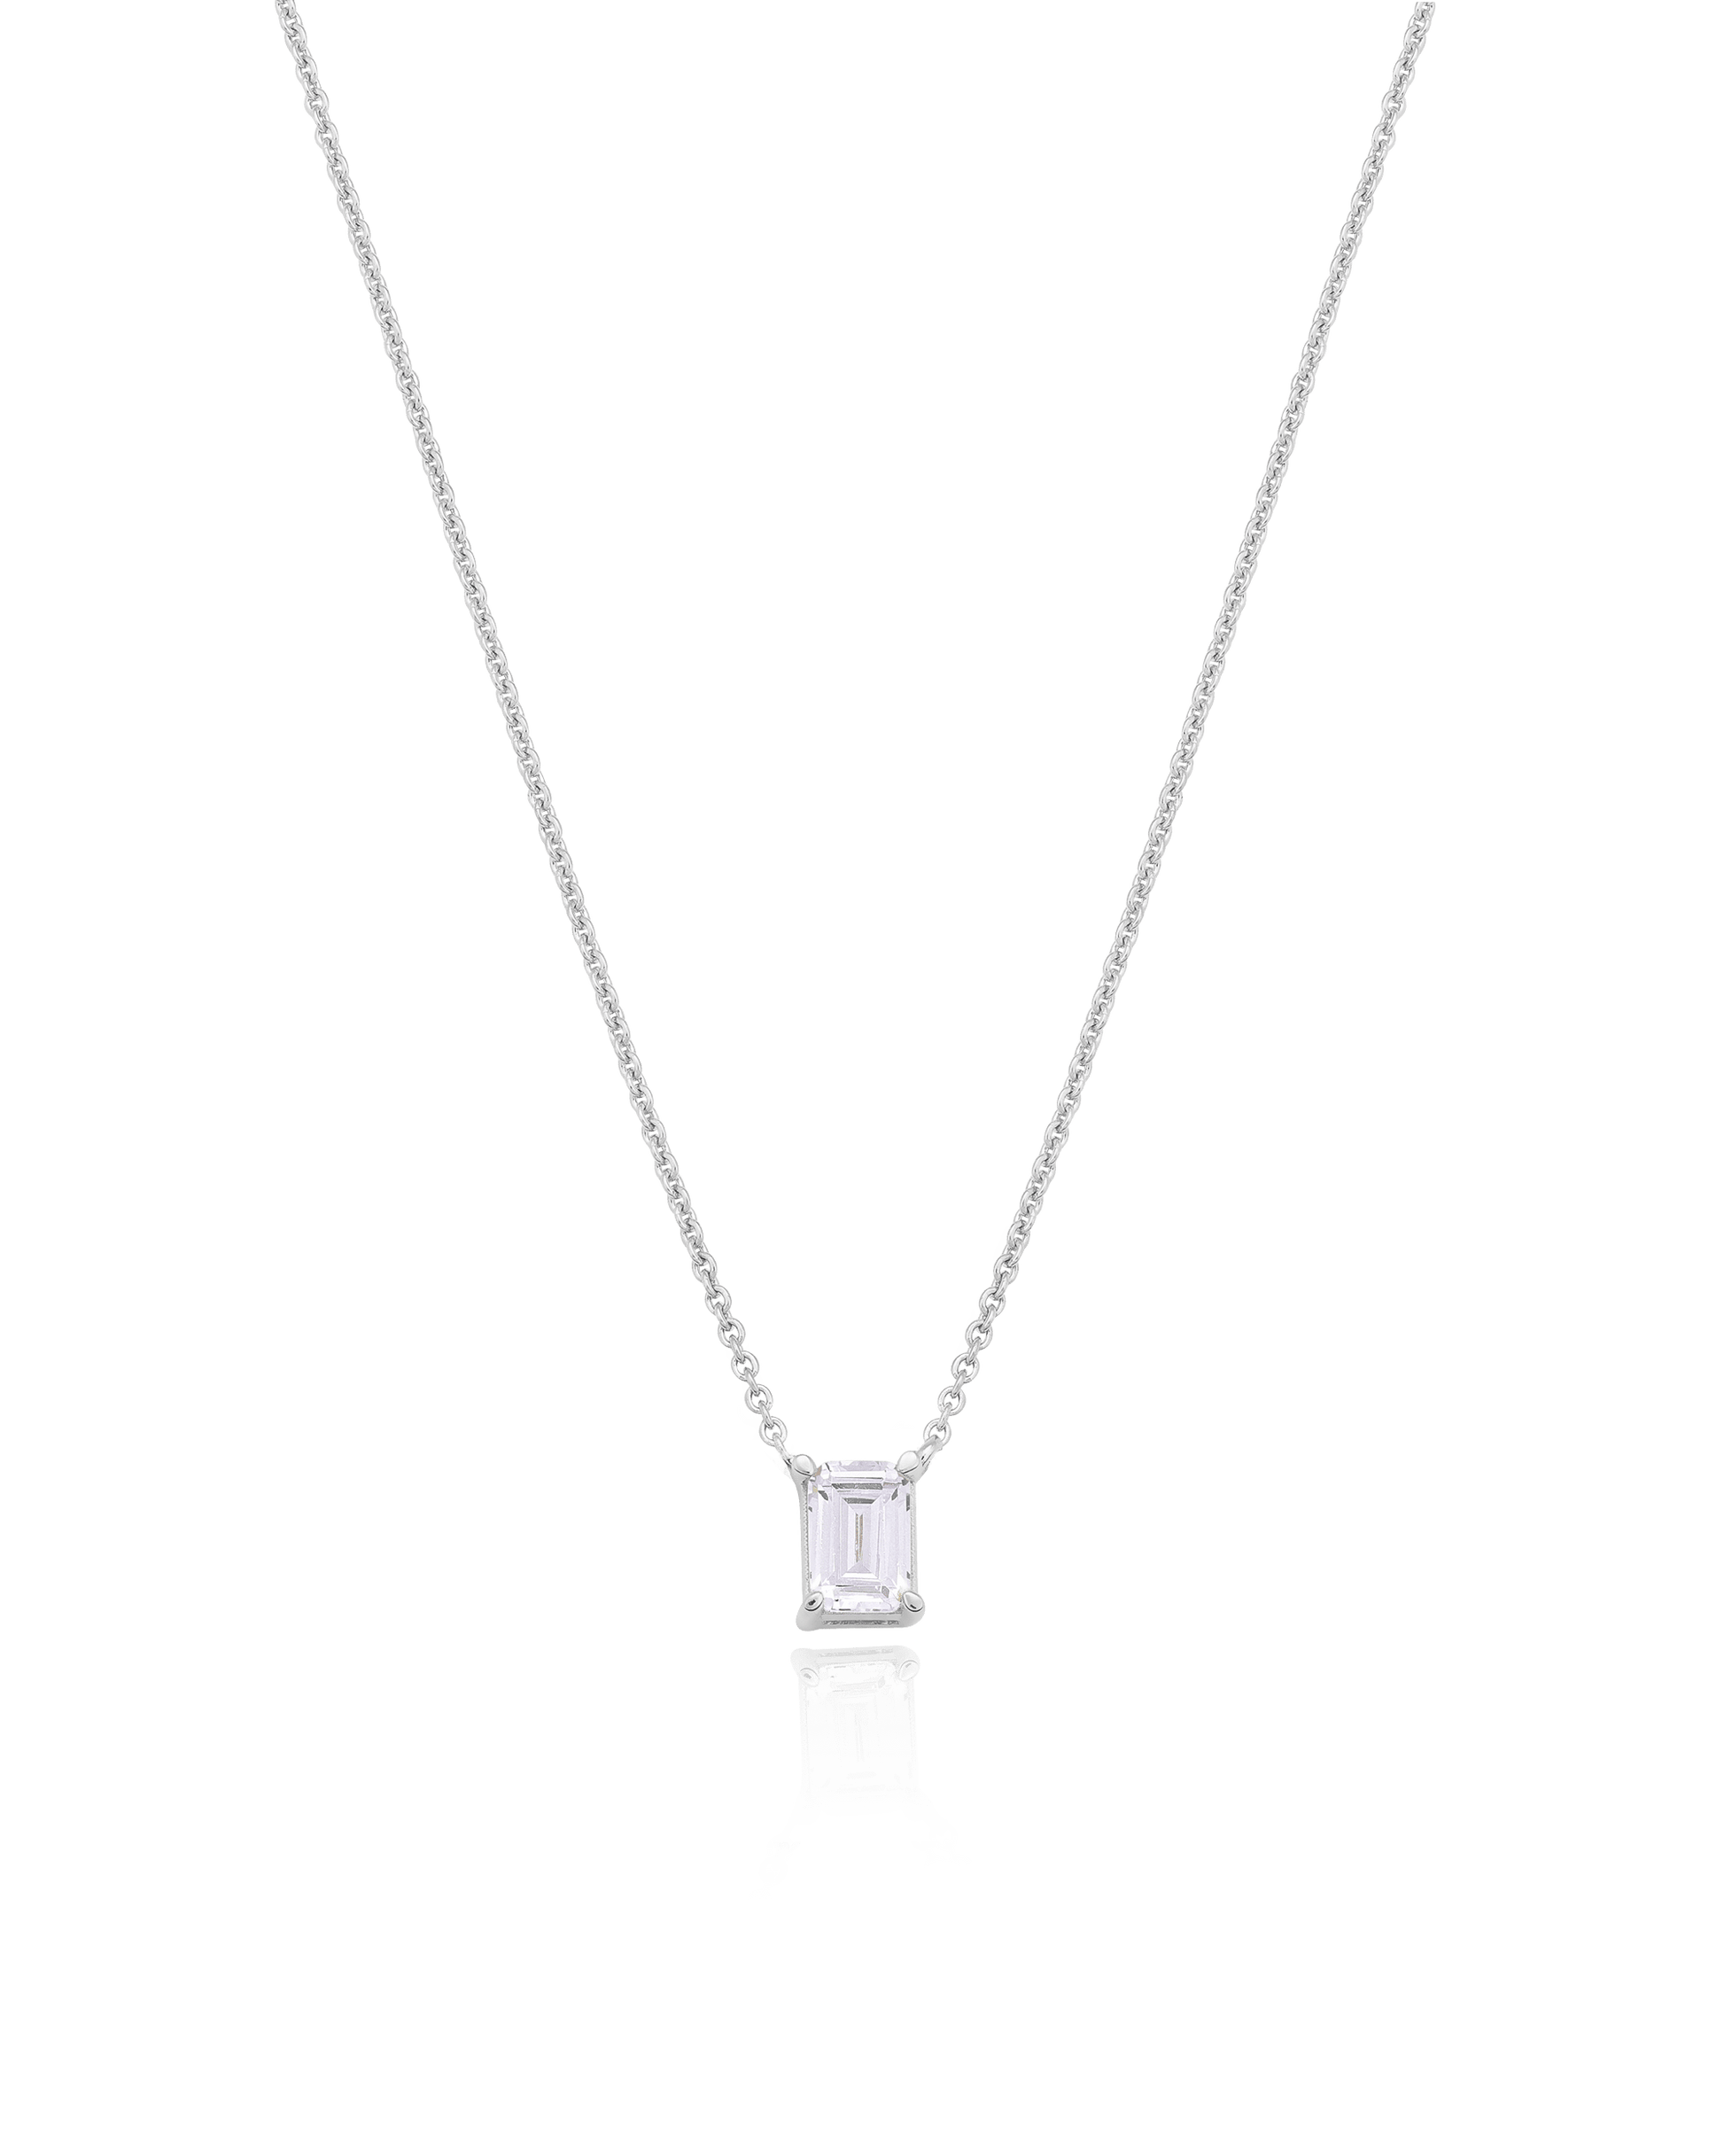 Emerald Solitaire Diamond Necklace - 18K Gold Vermeil Necklaces magal-dev 